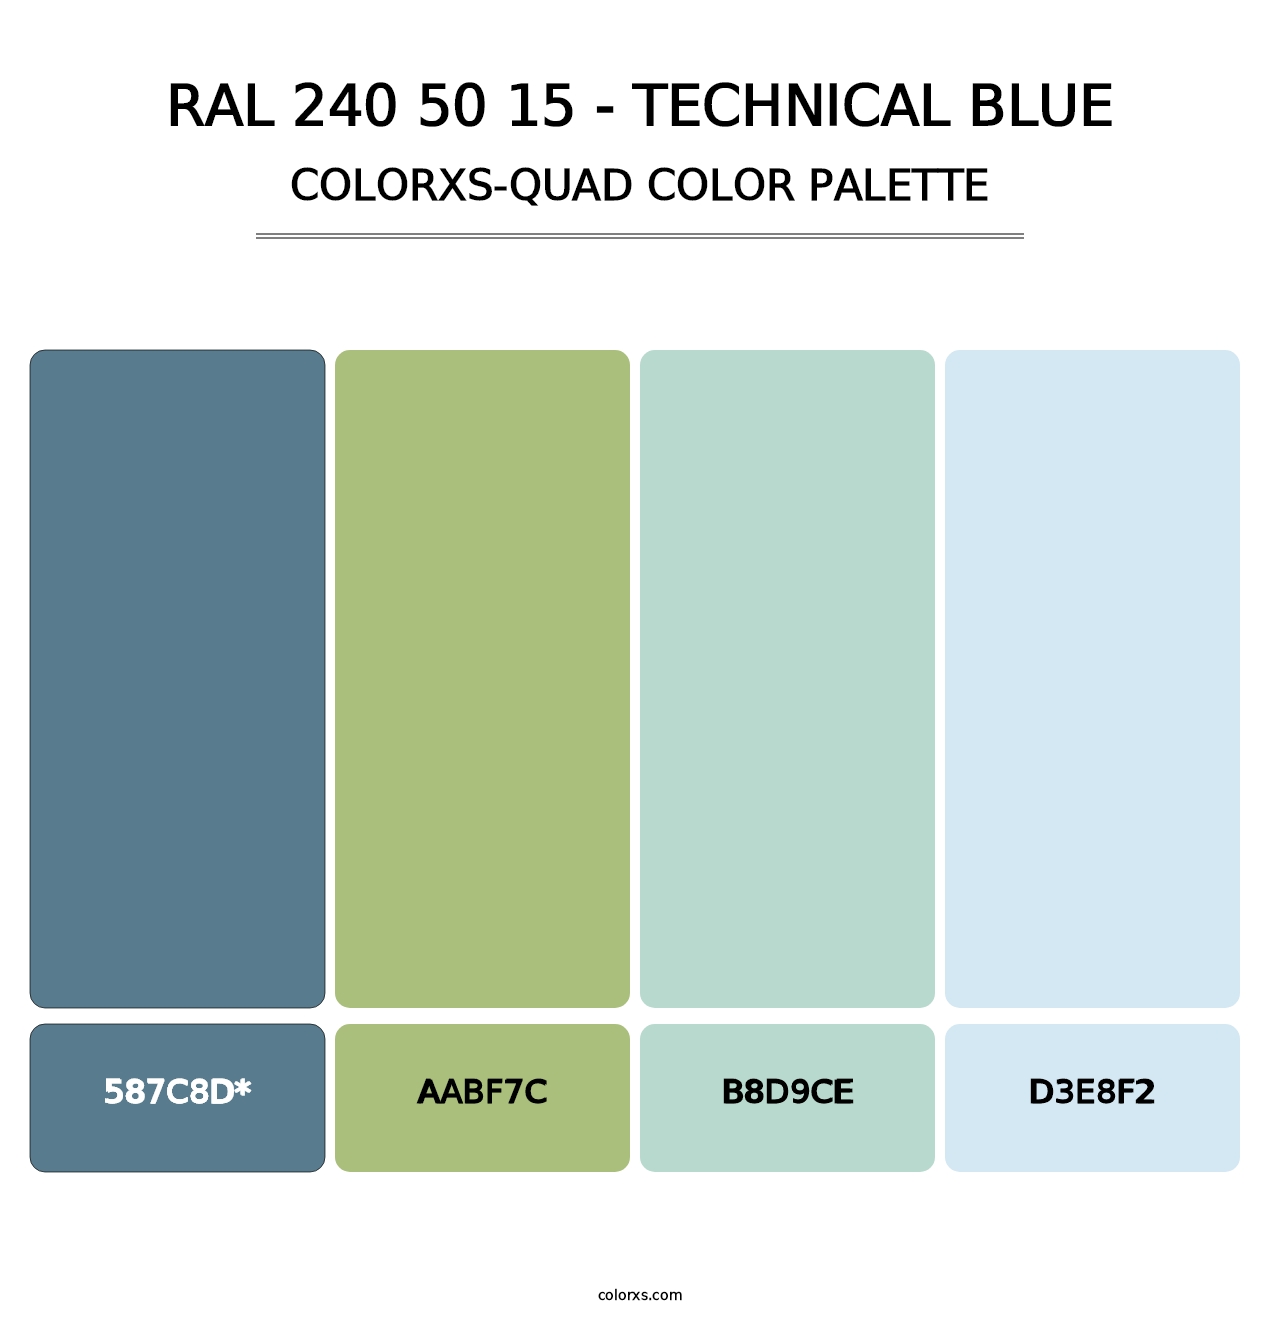 RAL 240 50 15 - Technical Blue - Colorxs Quad Palette